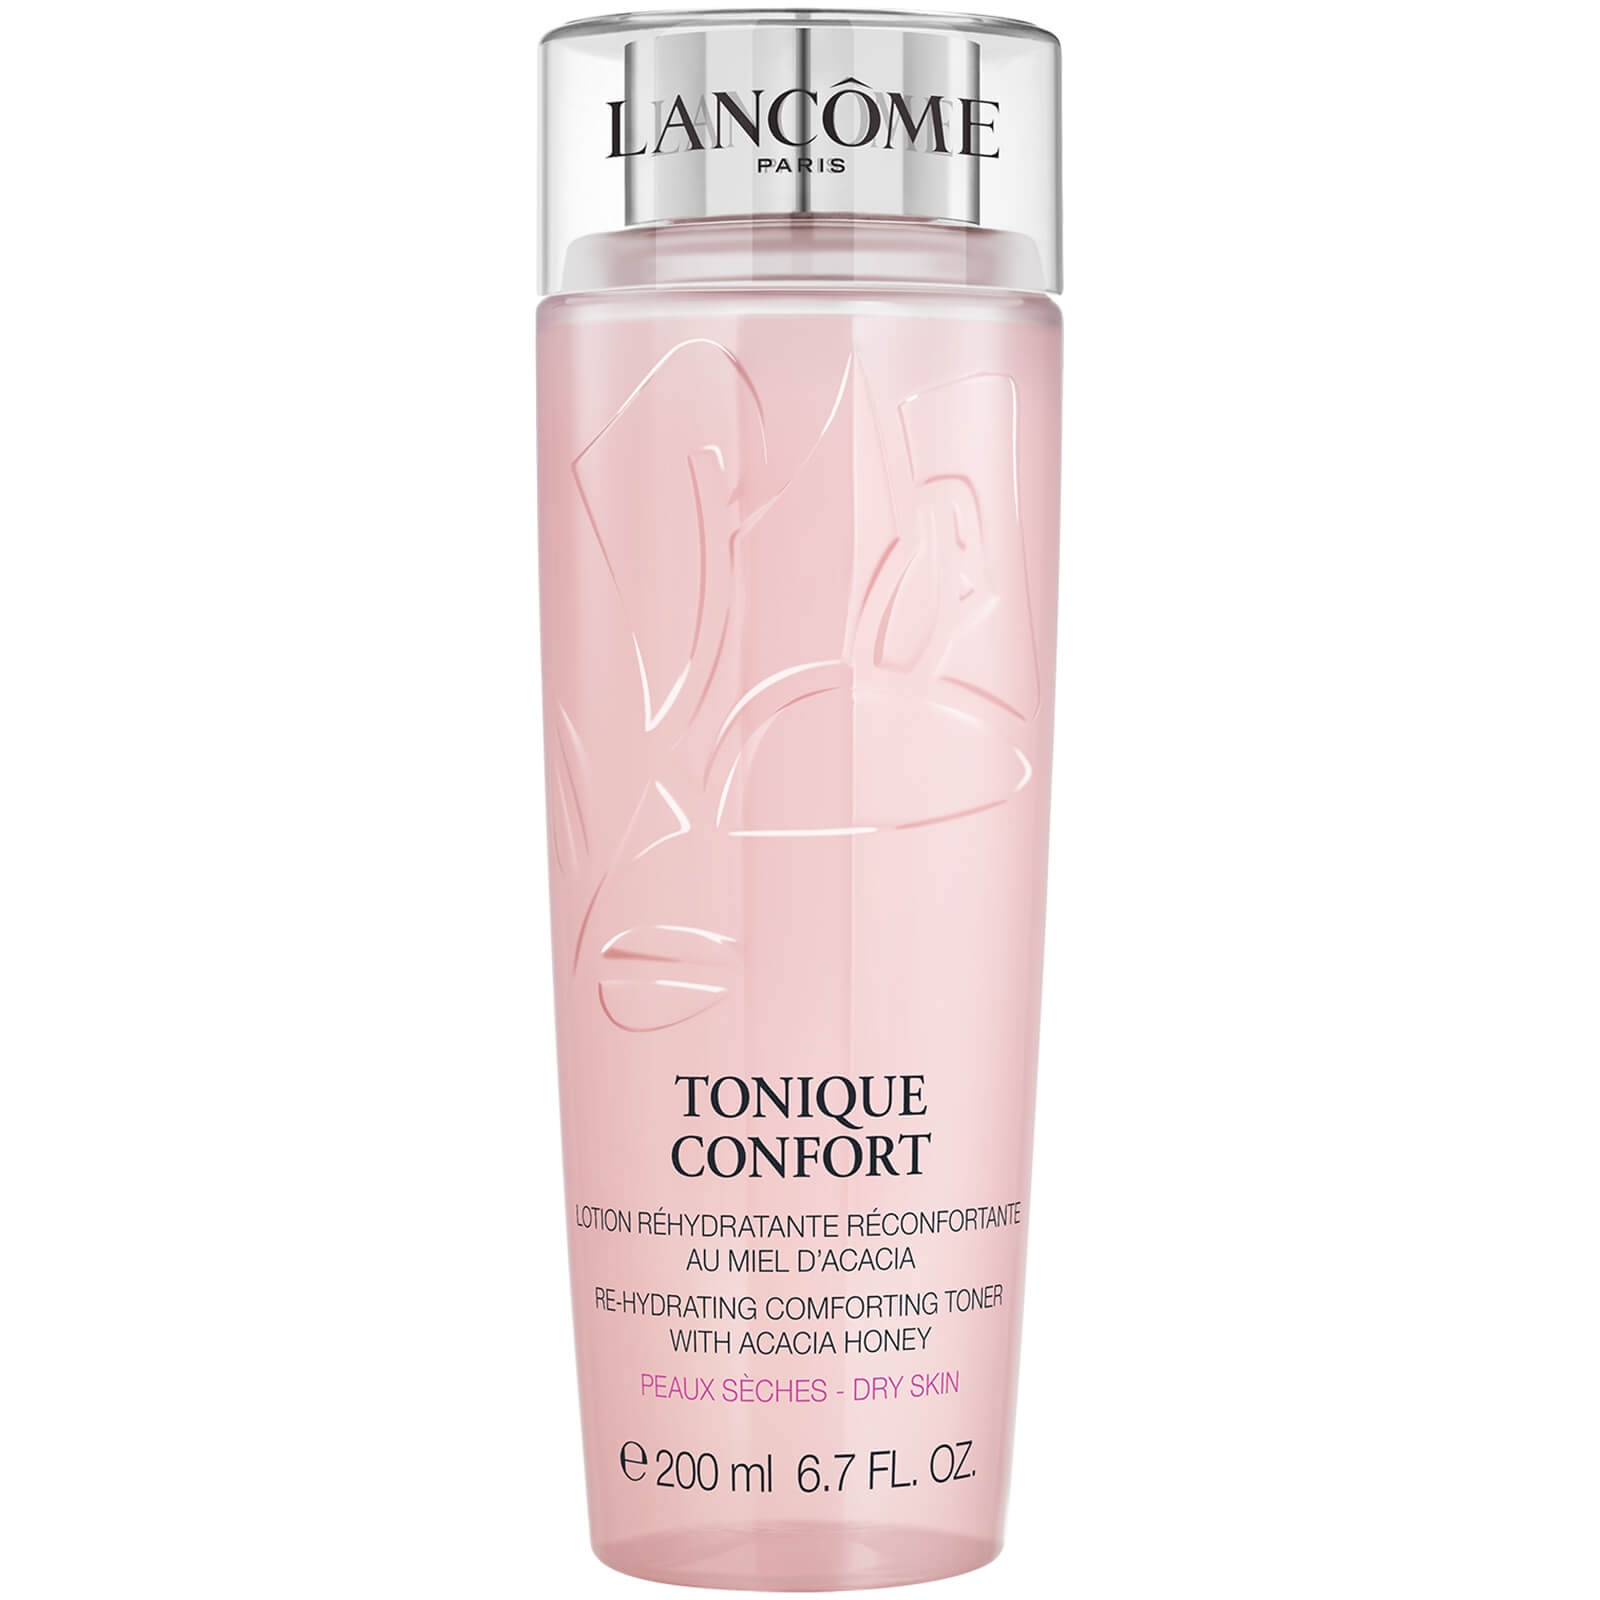 Image of Lancôme Tonique Confort Toner - 200ml